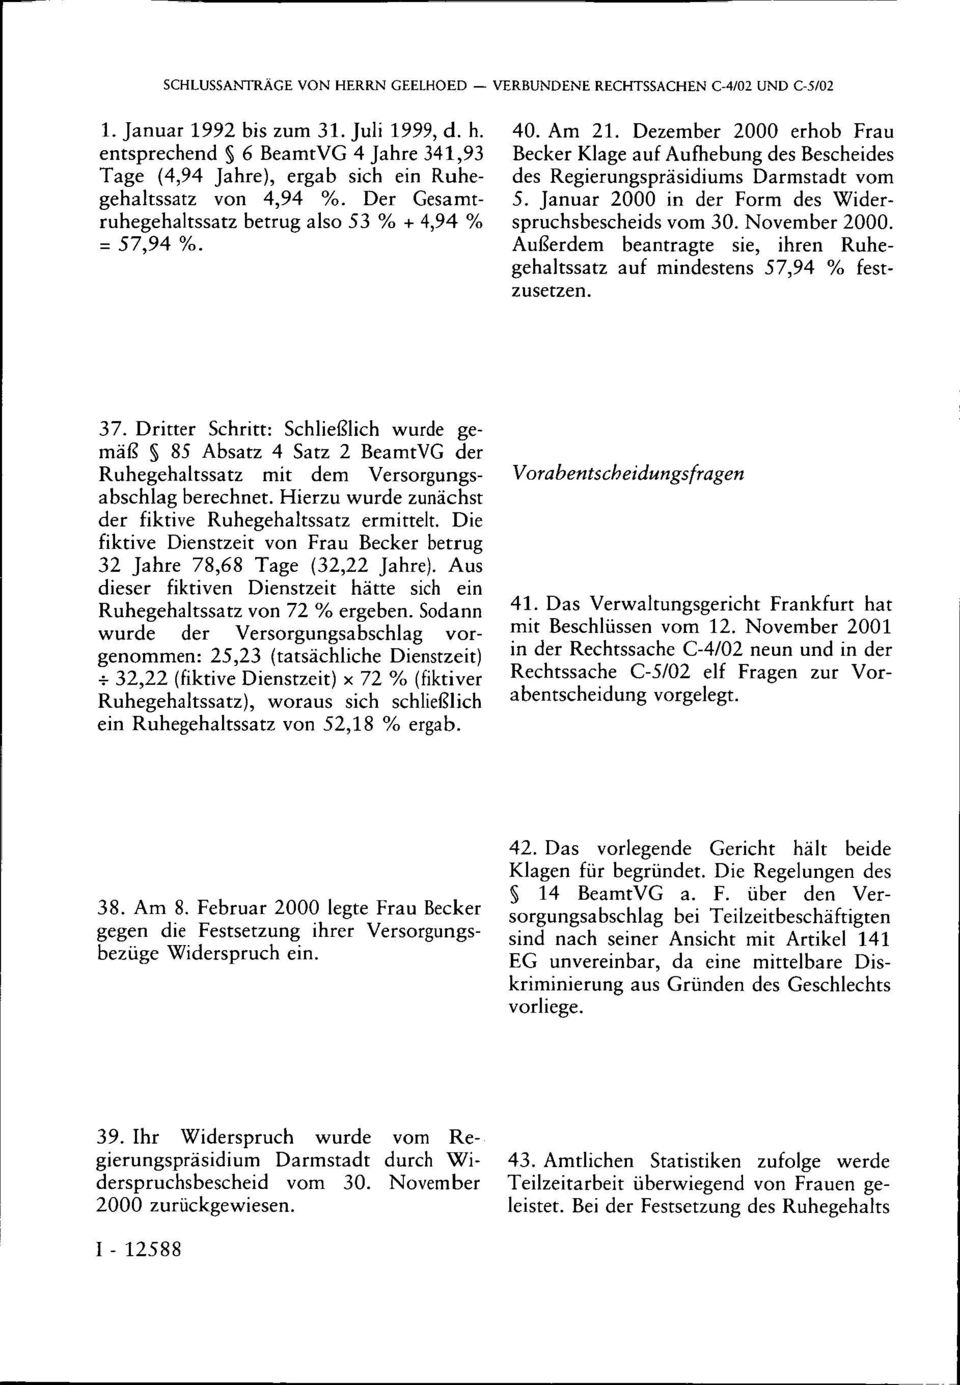 Dezember 2000 erhob Frau Becker Klage auf Aufhebung des Bescheides des Regierungspräsidiums Darmstadt vom 5. Januar 2000 in der Form des Widerspruchsbescheids vom 30. November 2000.